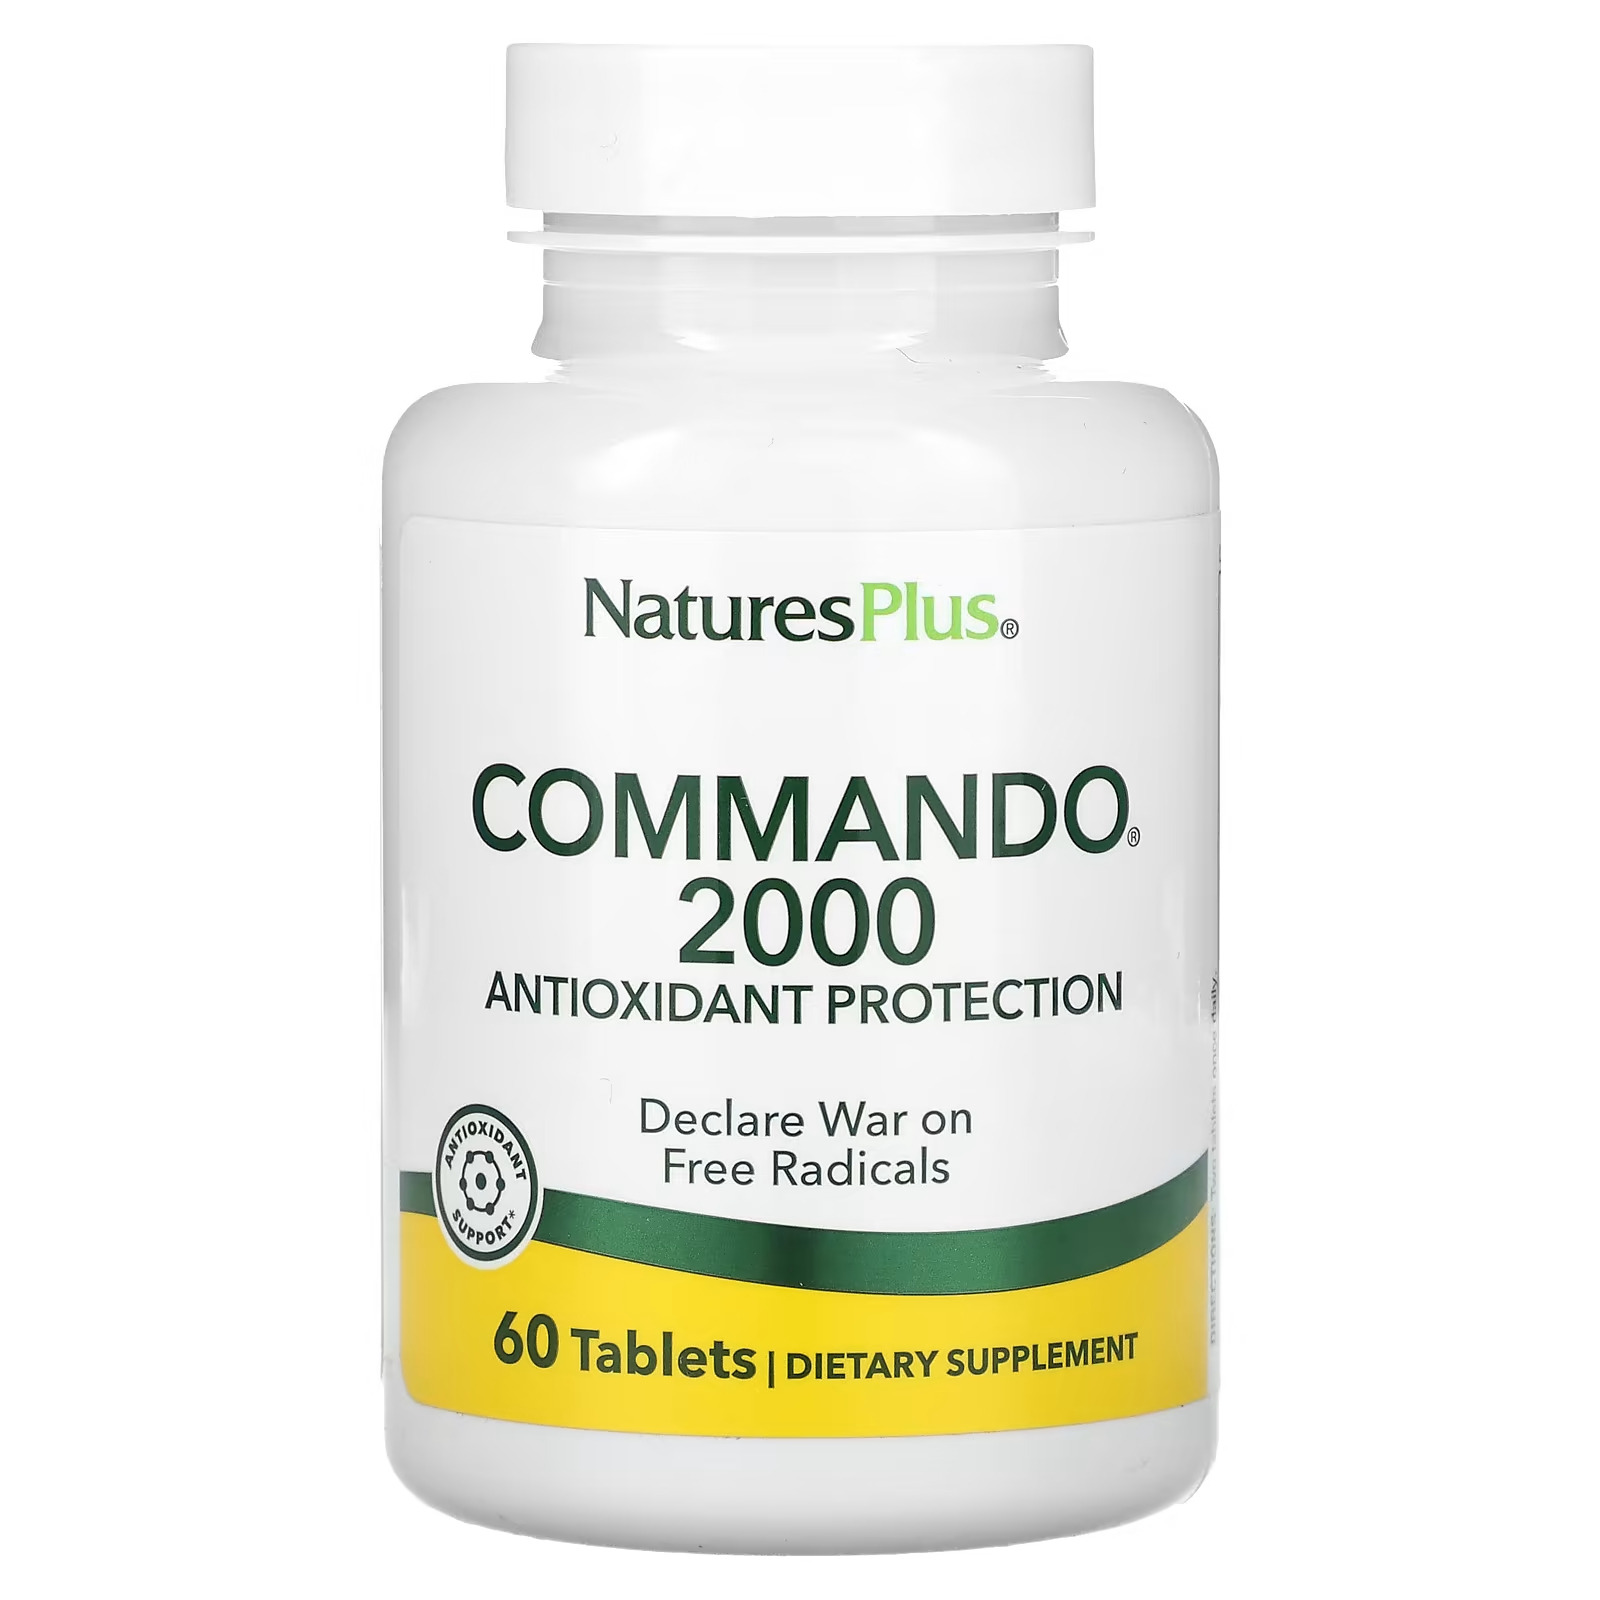 naturesplus quercetin plus 60 таблеток NaturesPlus Commando 2000 60 таблеток